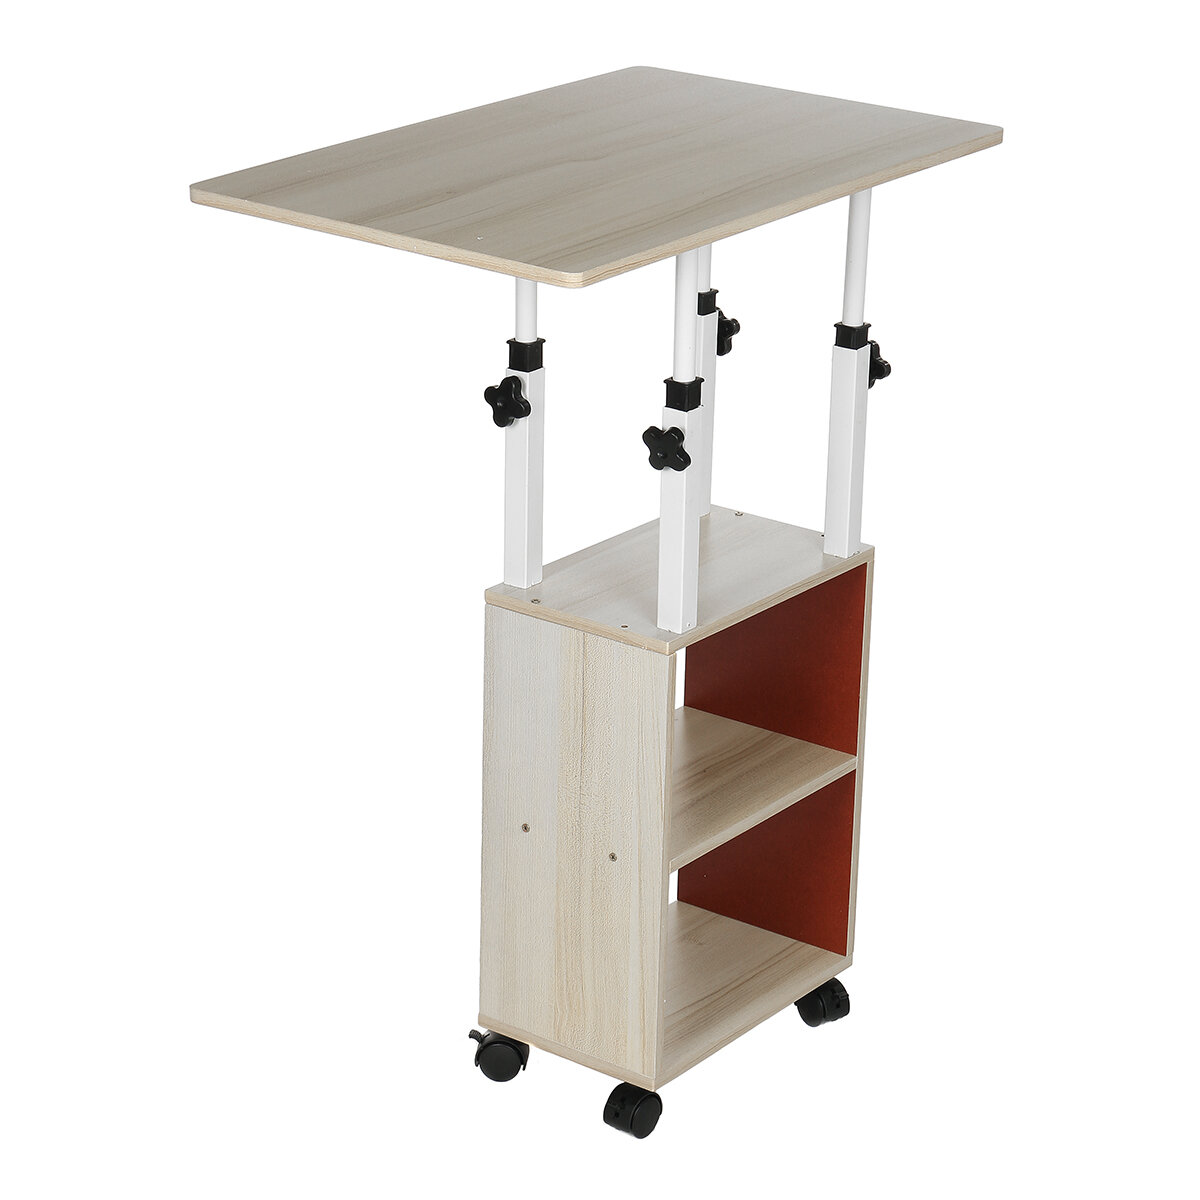 

Прикроватный столик передвижной простой маленький столик для спальни домашний простой студенческий подъемный стол для об